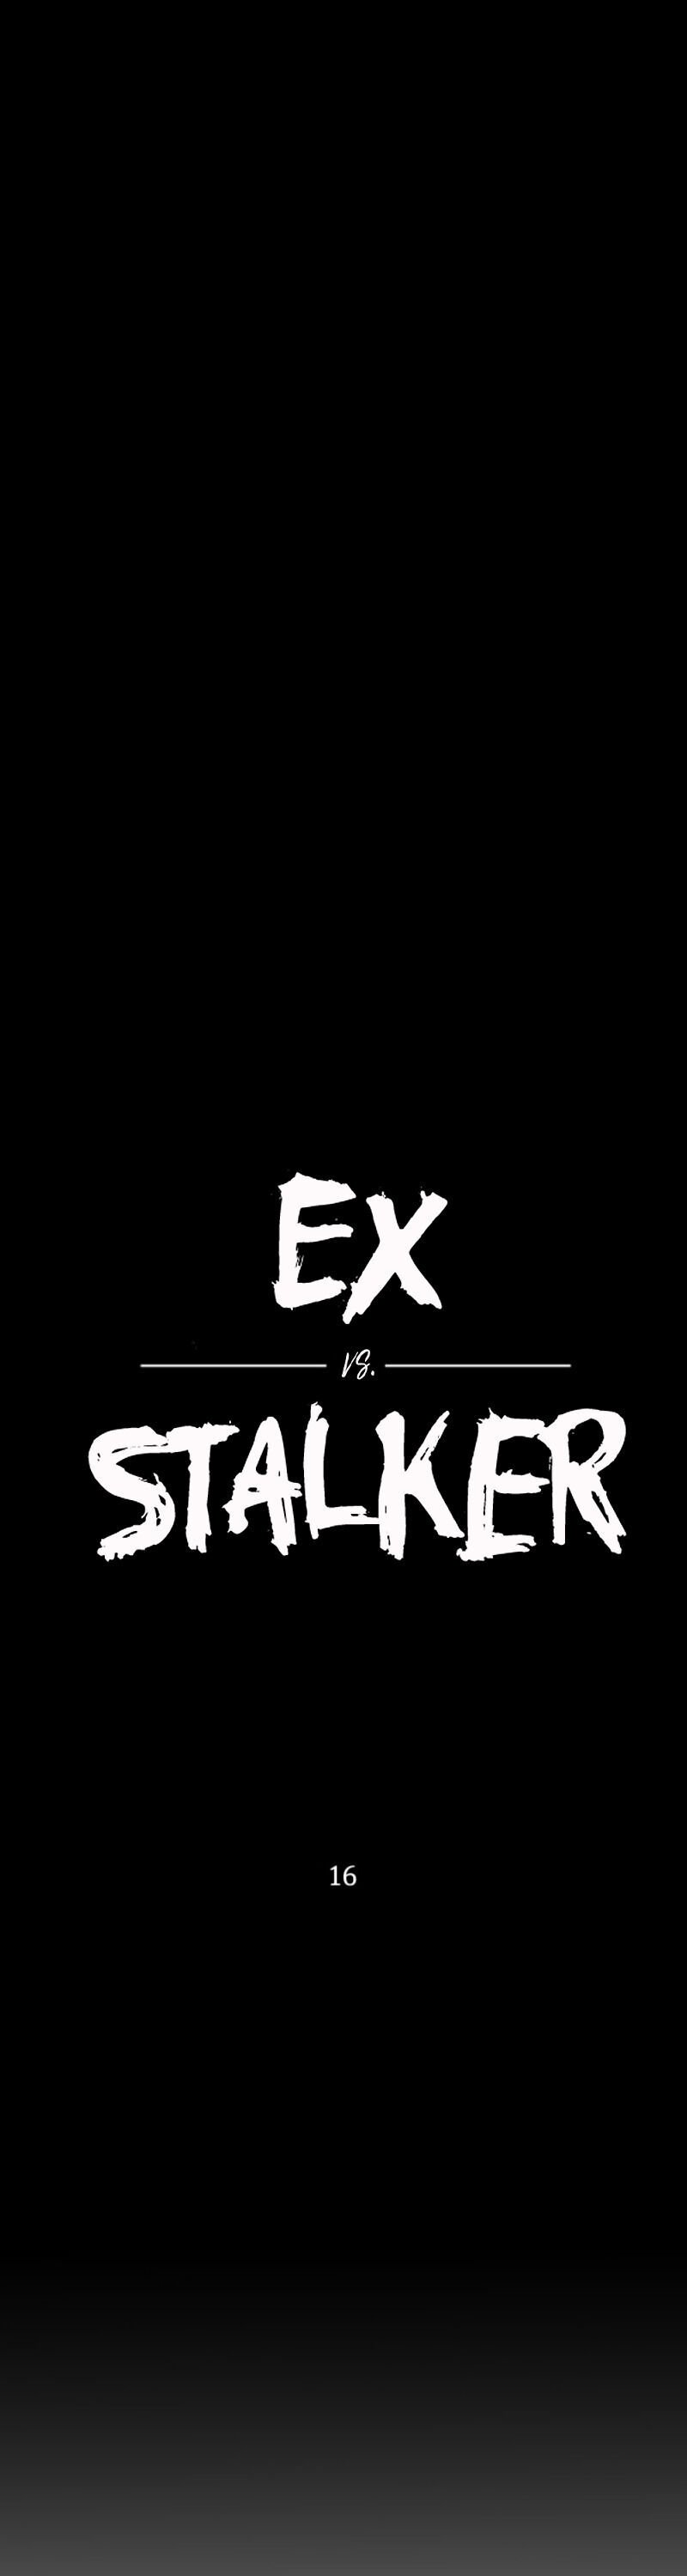 Ex Vs. Stalker - Page 2